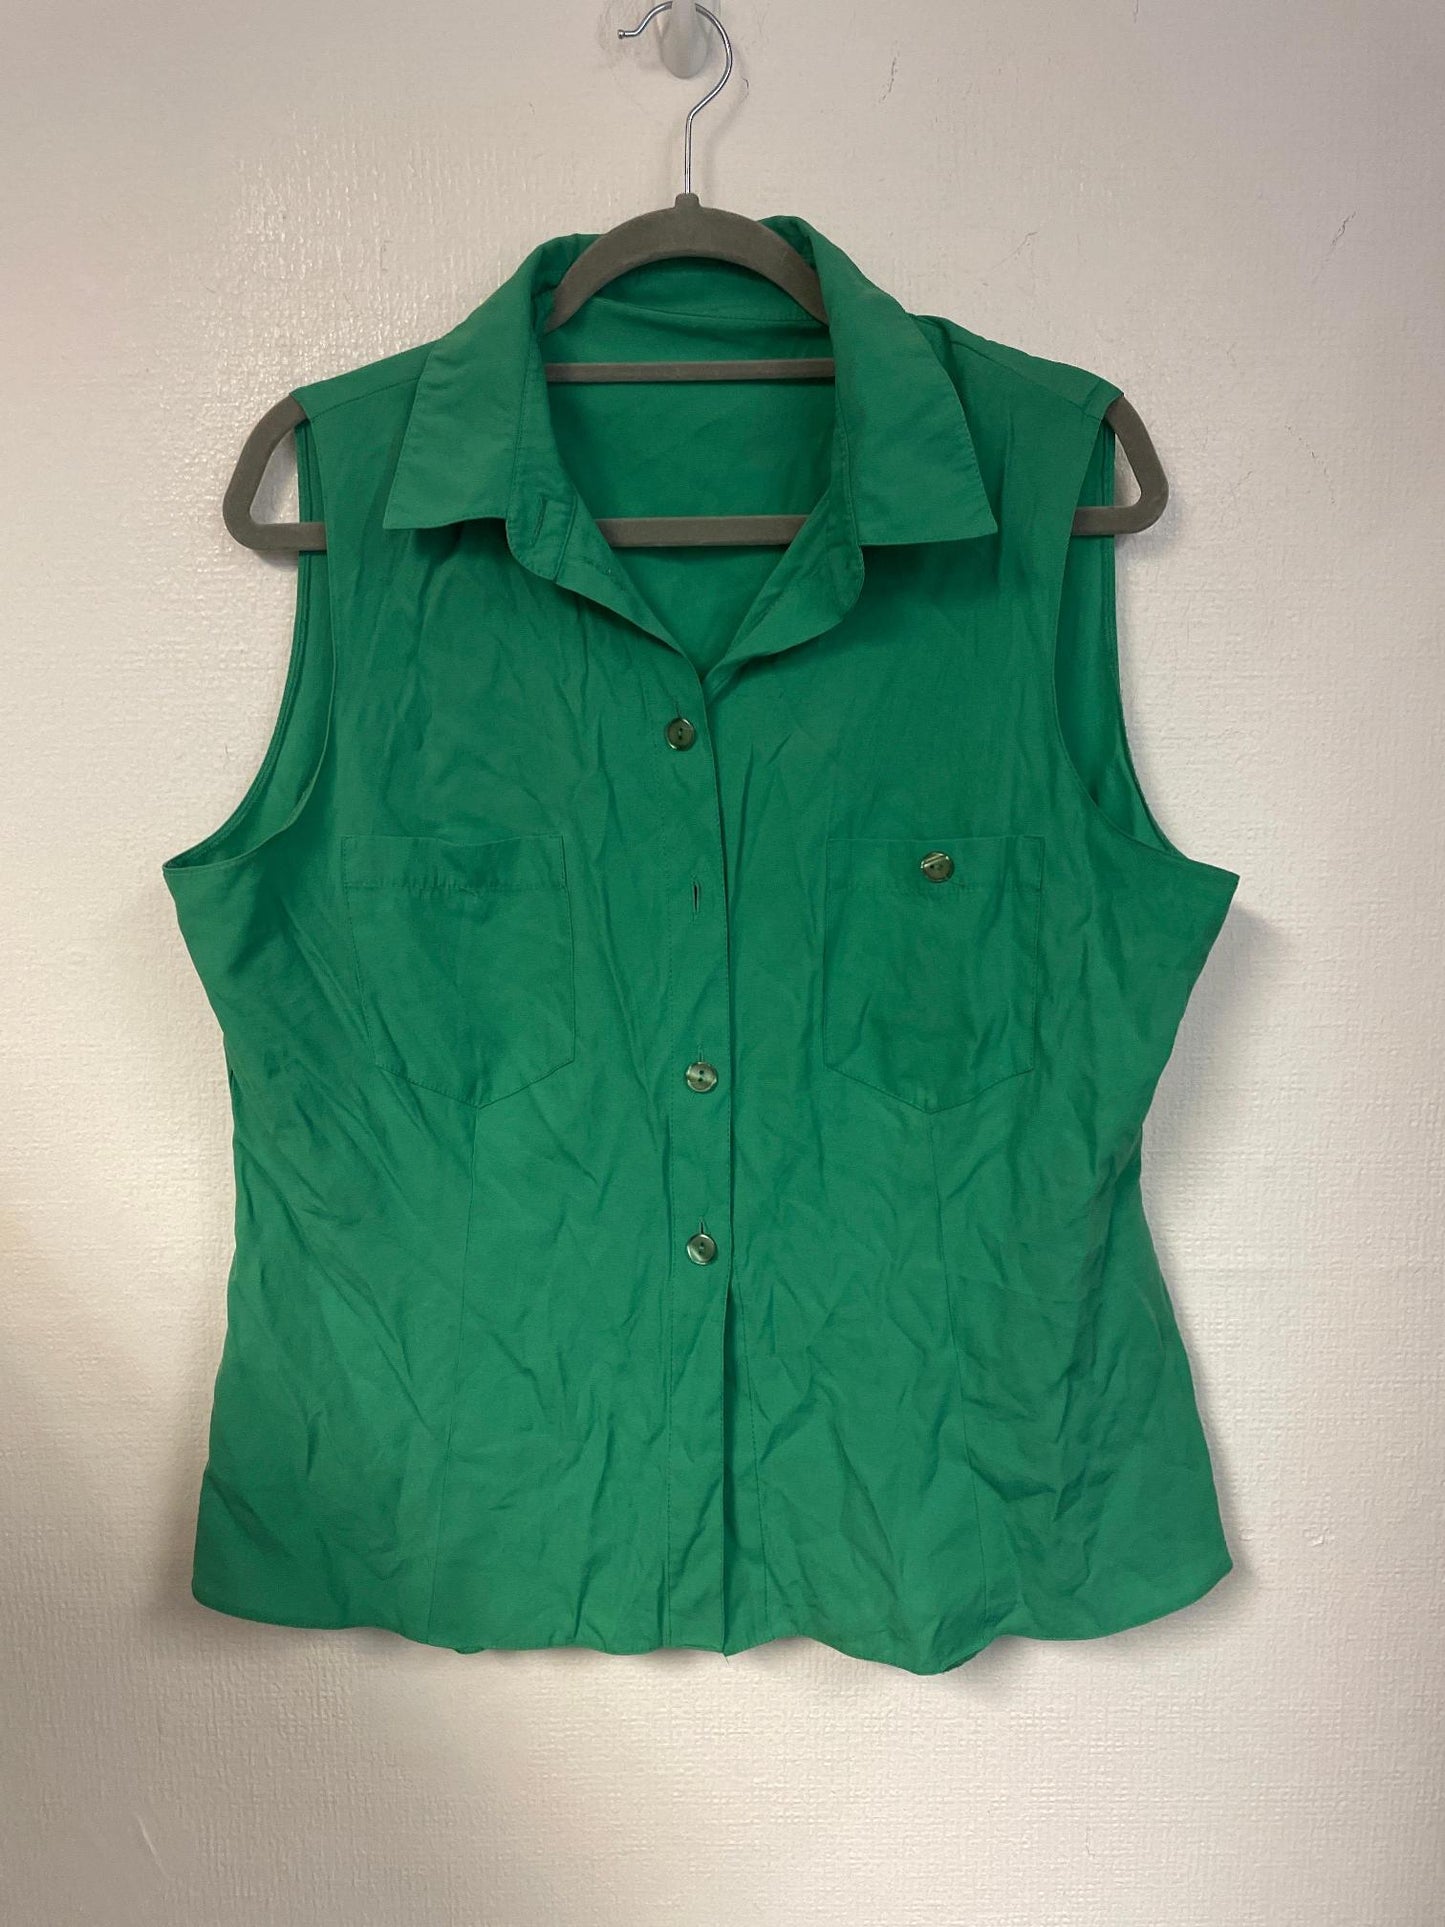 Green vintage sleeveless shirt, size 18/20 - Damaged Item Sale